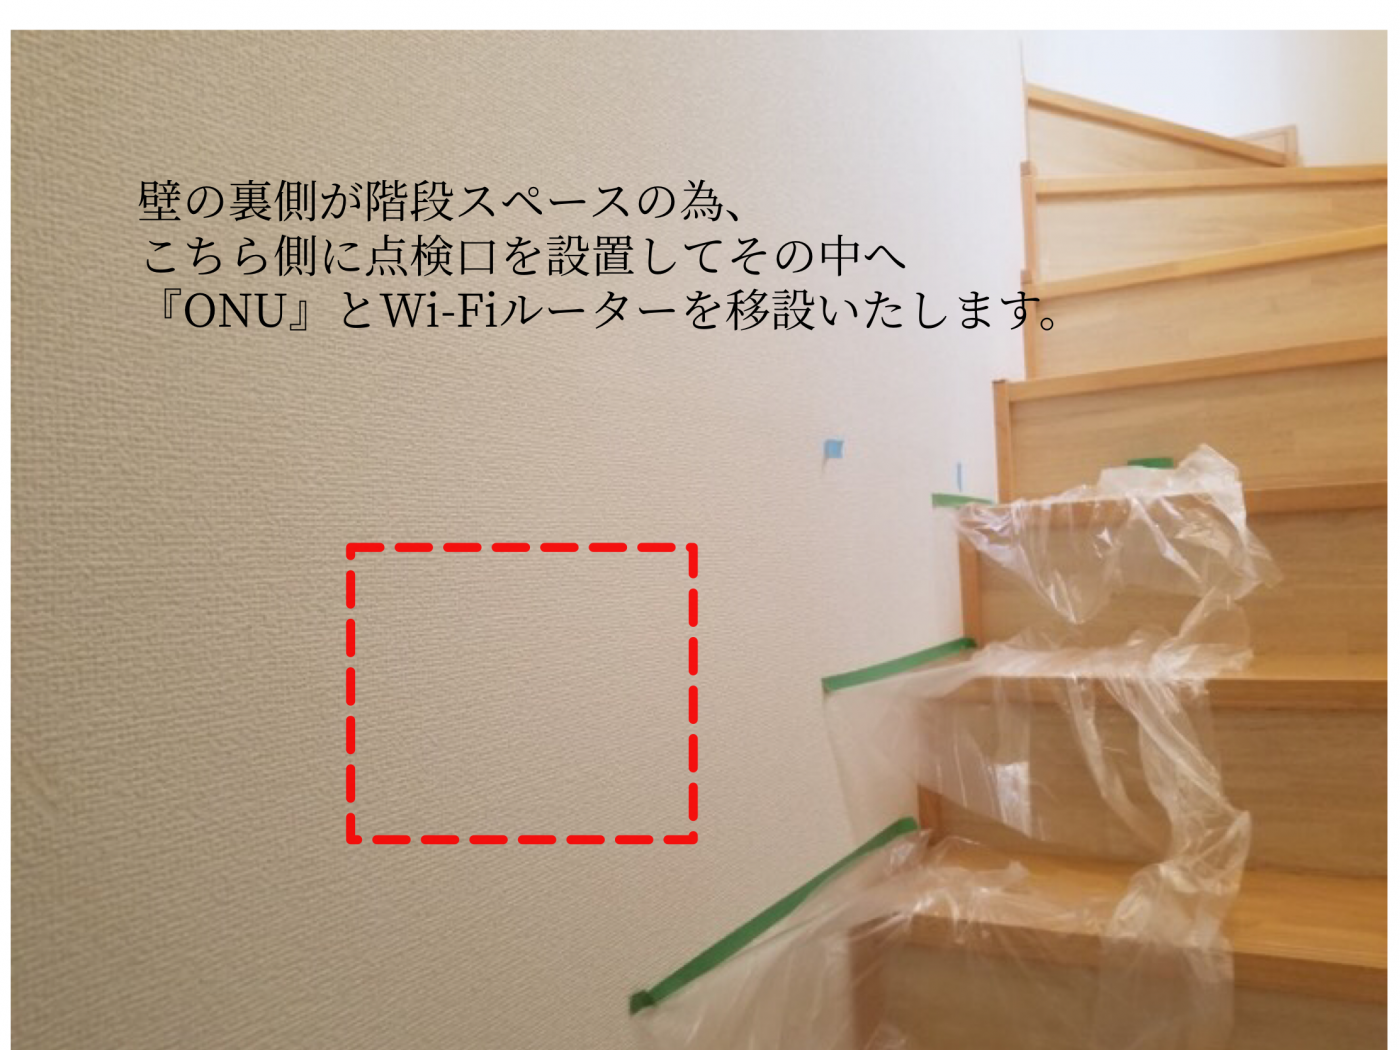 壁掛けテレビ設置 とWi-Fiルーターと『ONU』の隠蔽 | 東京・神奈川のテレビ壁掛け工事業者・配線工事・アンテナ工事【ライフプラス】